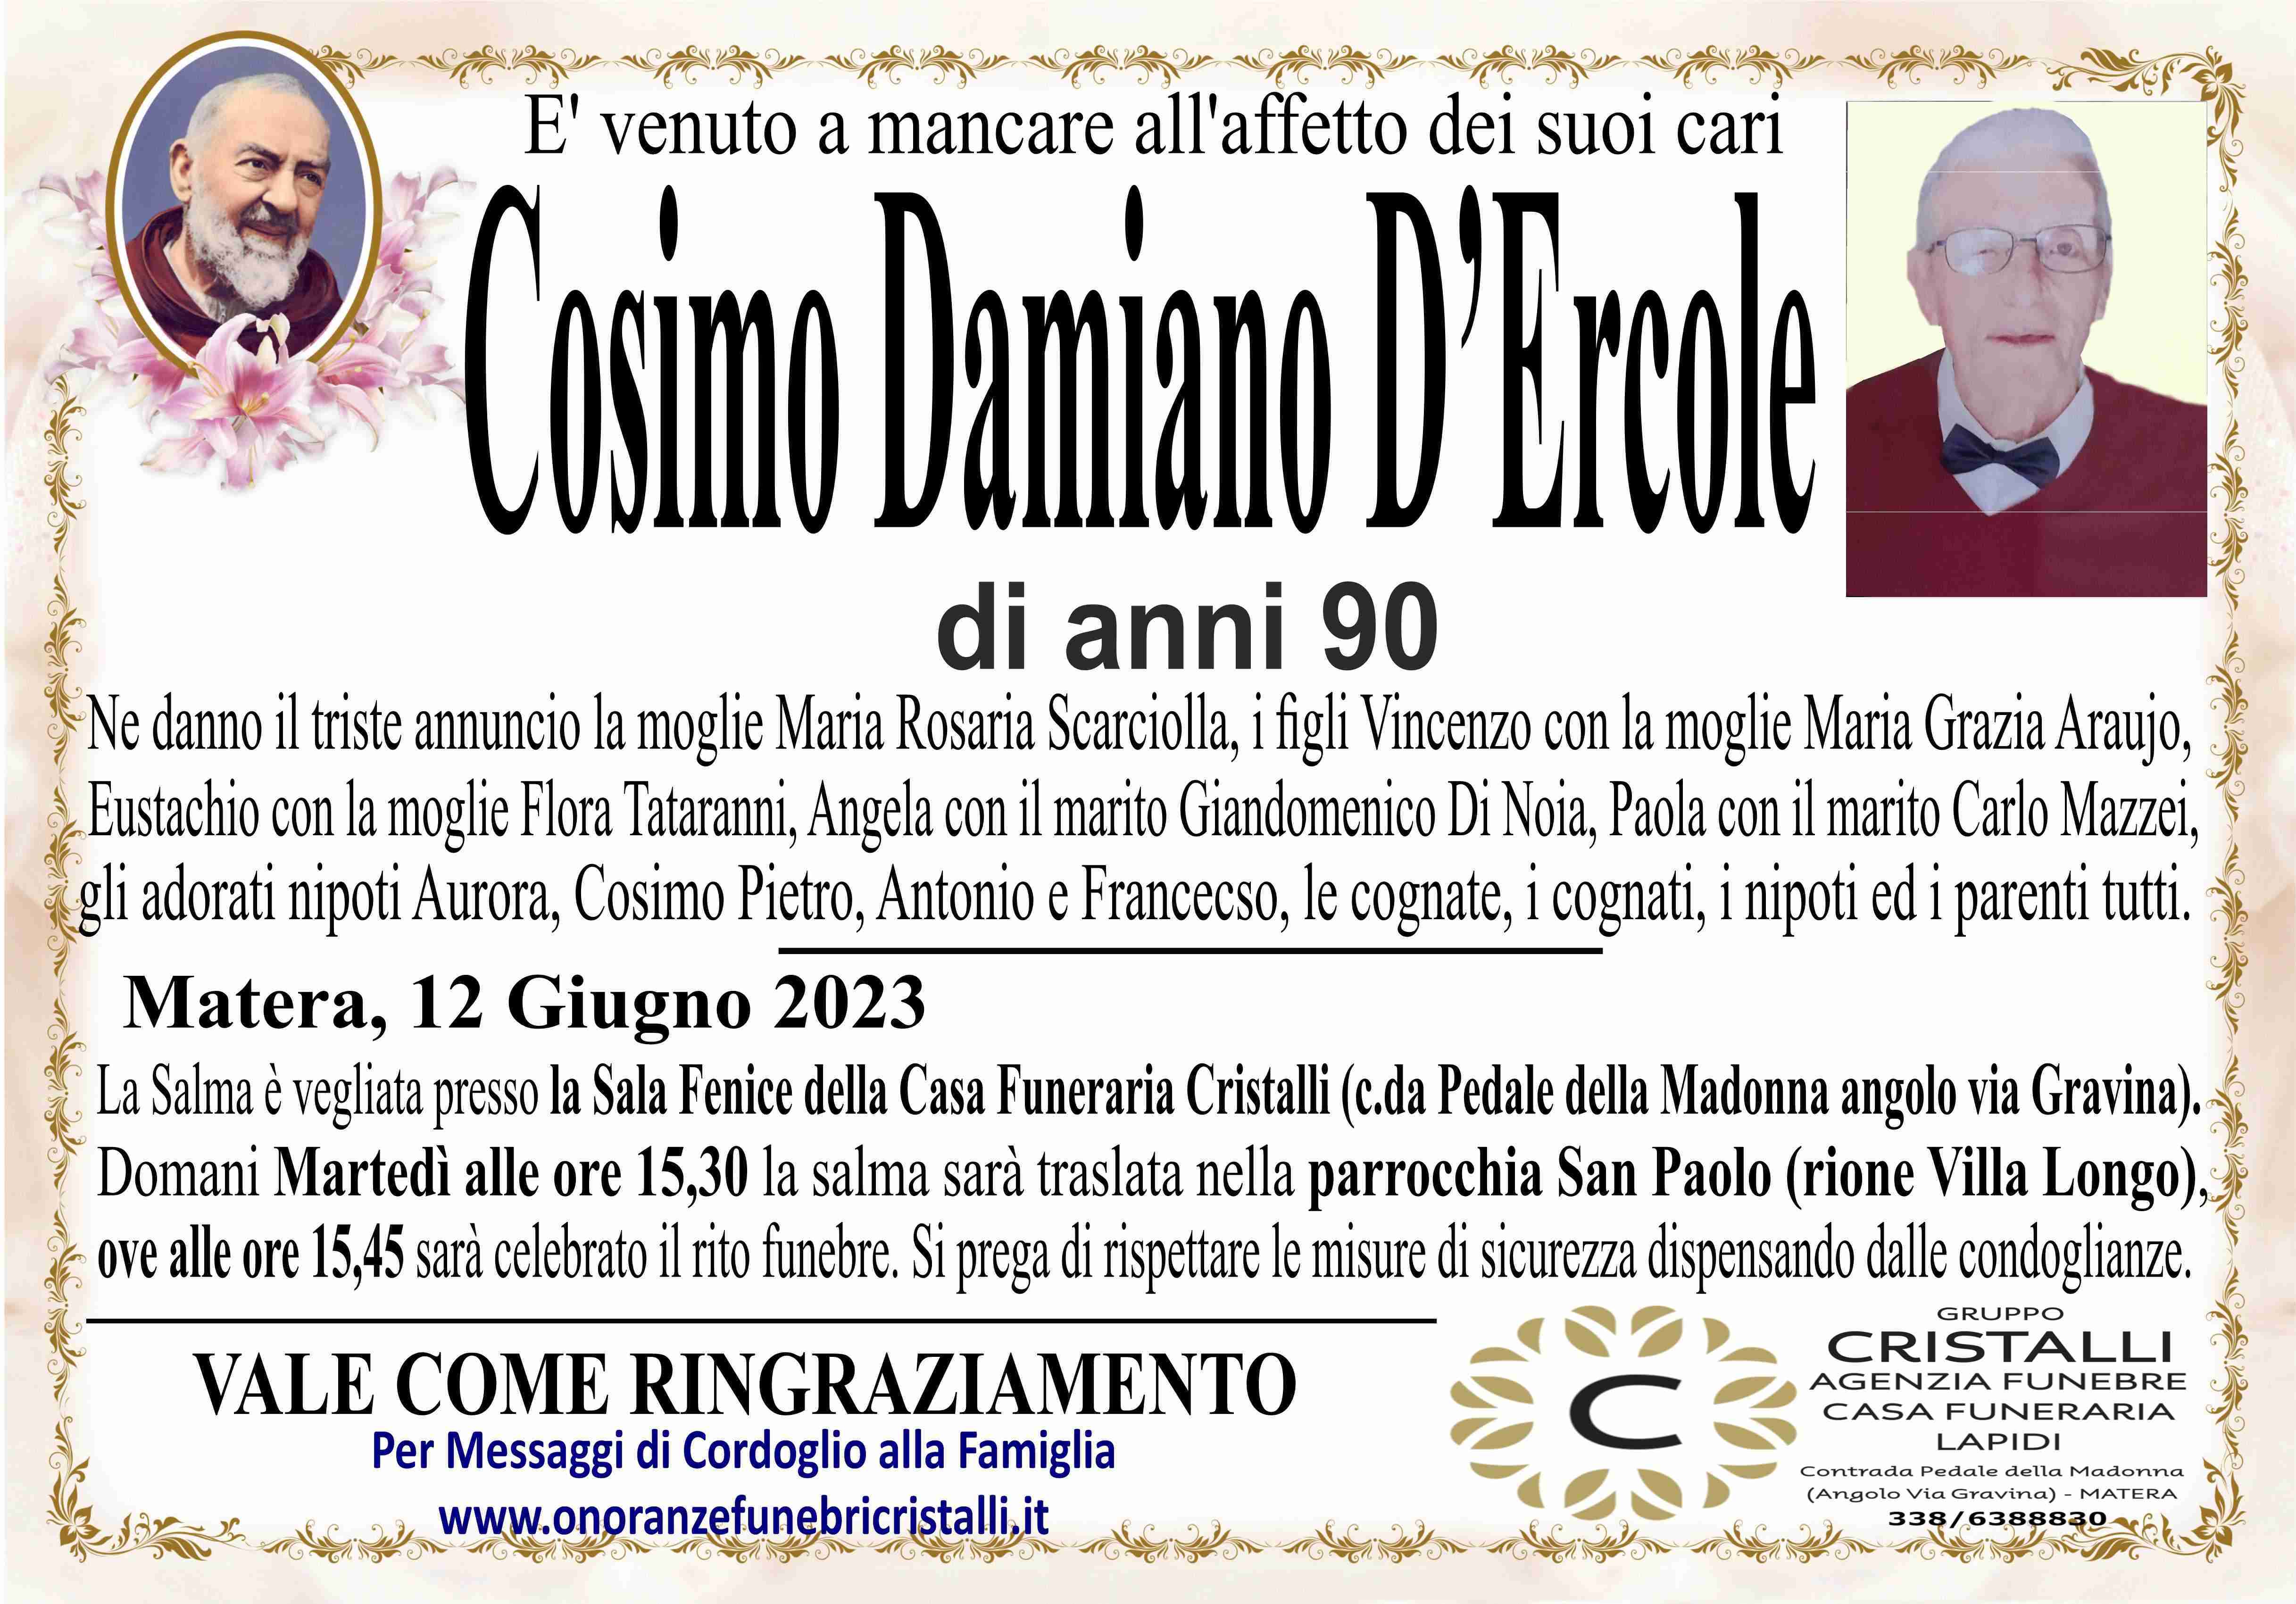 Cosimo Damiano D'Ercole